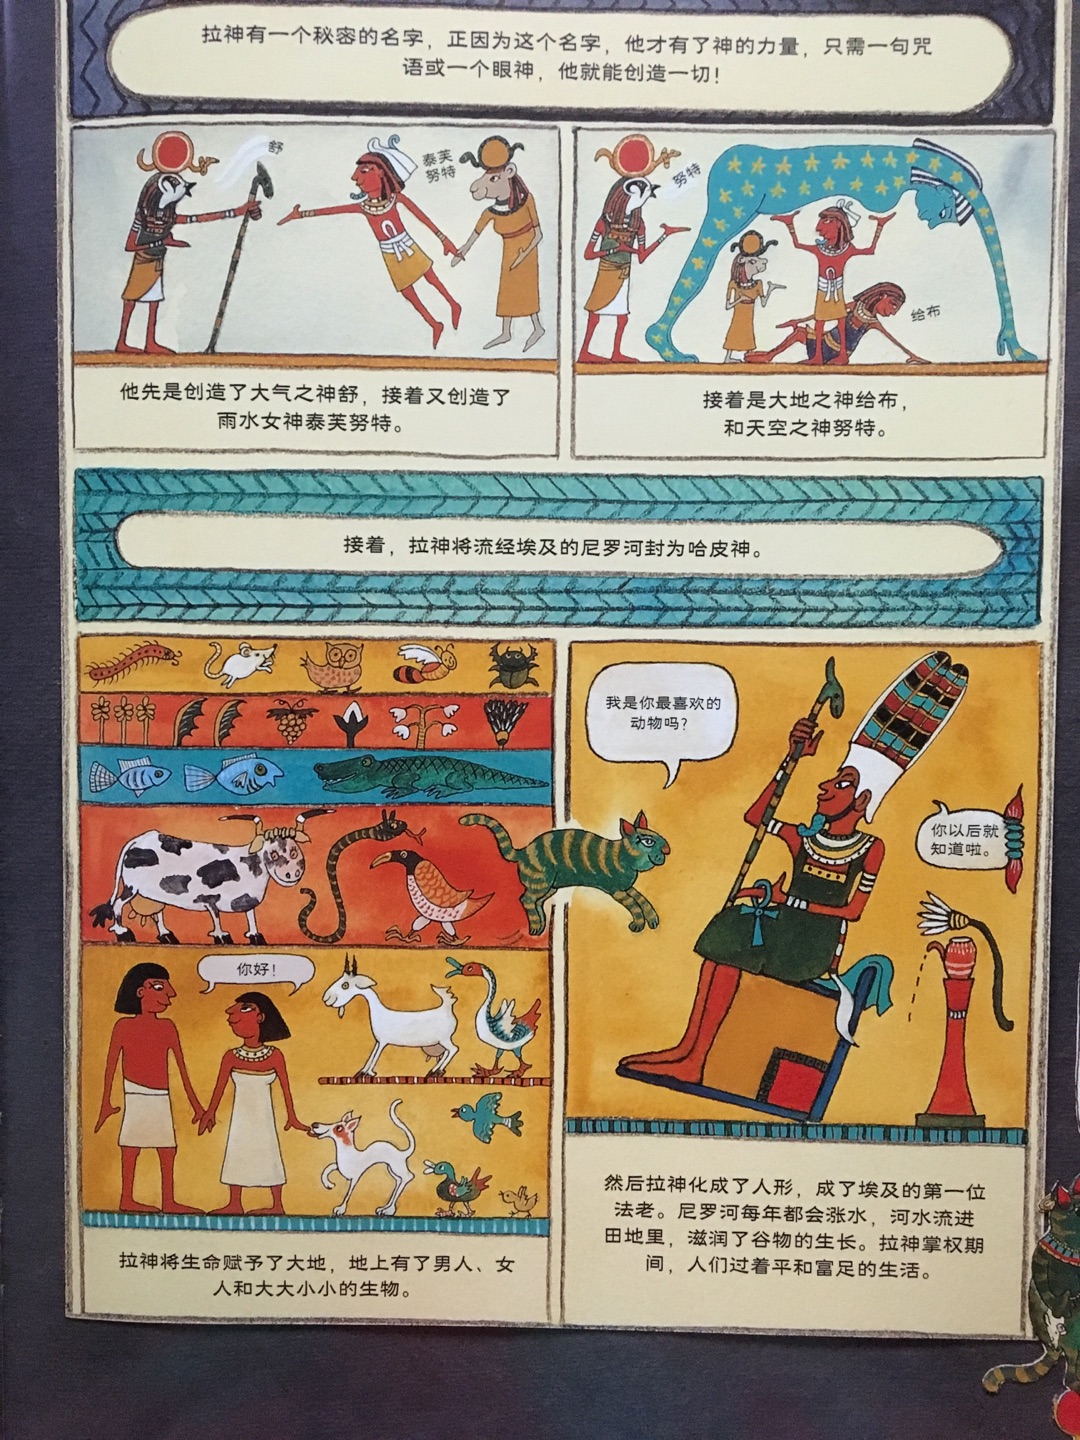 任何一种文化都有其独特之处，关于埃及的故事，这本书用绘本的方式帮我们呈现出来。从书的封面到内容，都具有埃及特色，有资源给孩子拓展了。